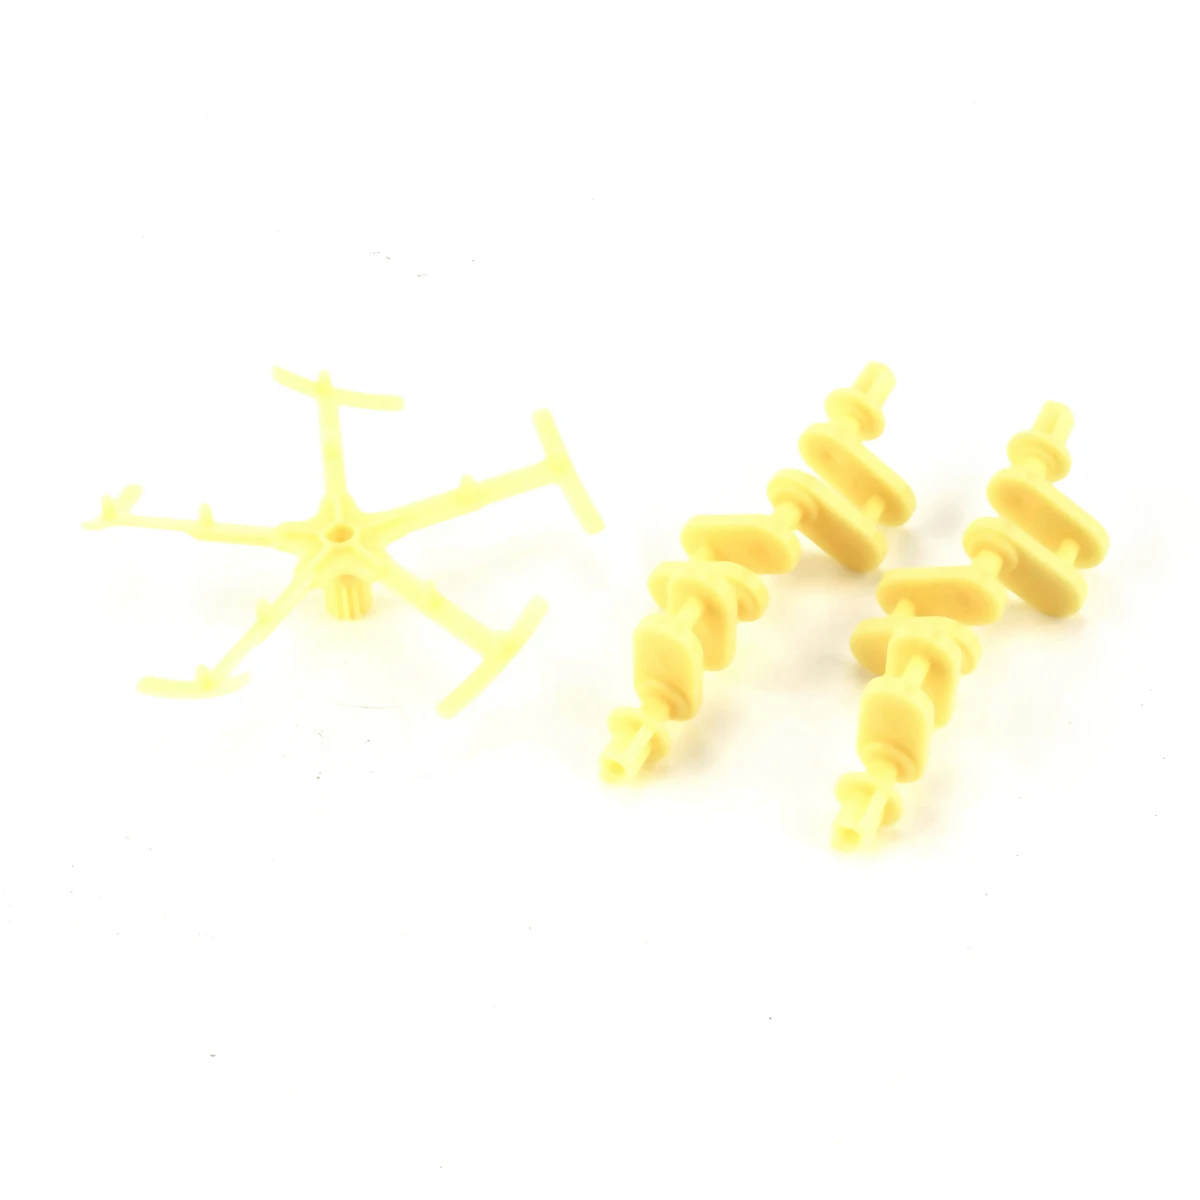 OCDAY DIY 3D головоломки ветросиловой механические прогулки Уокер Strandbeest модель комплект умная тренировка головоломки игрушки для детей